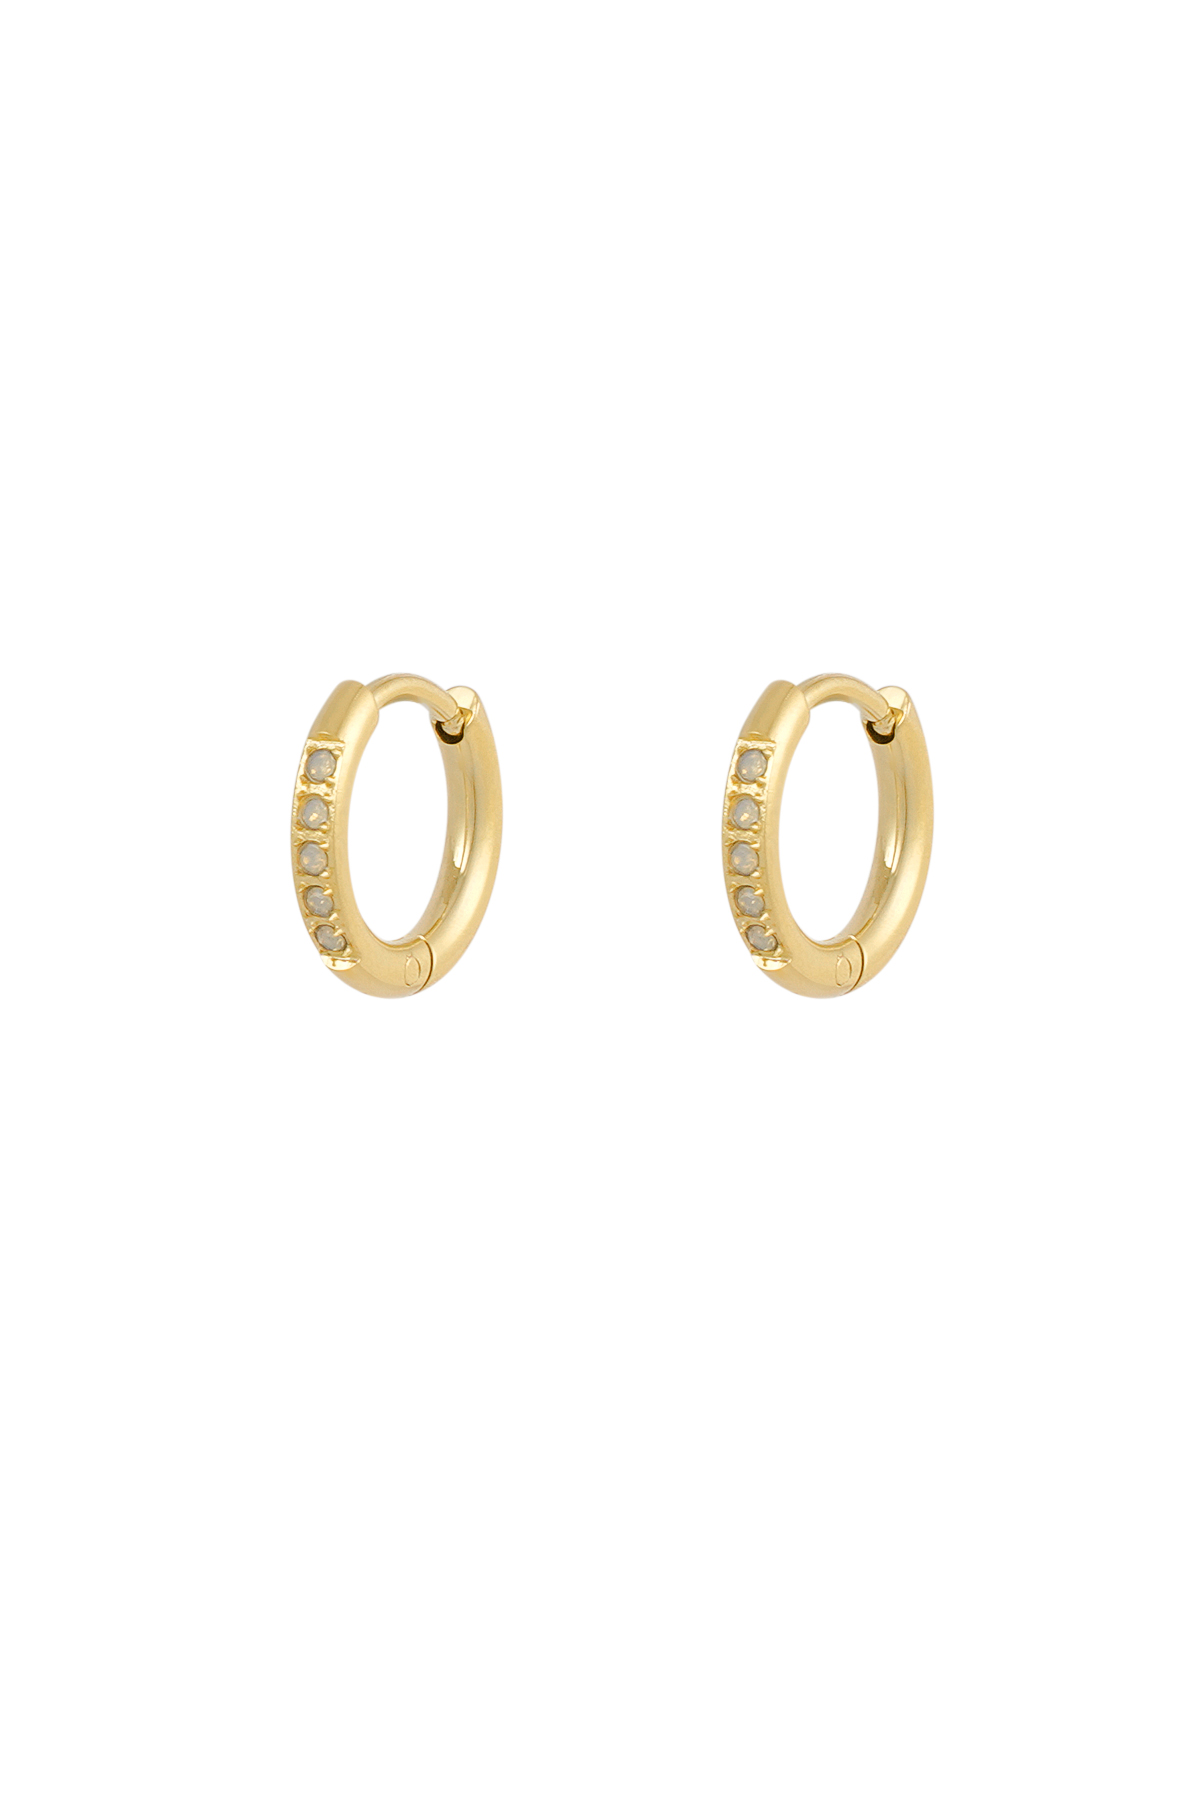 Diamond lover earrings - white gold  h5 